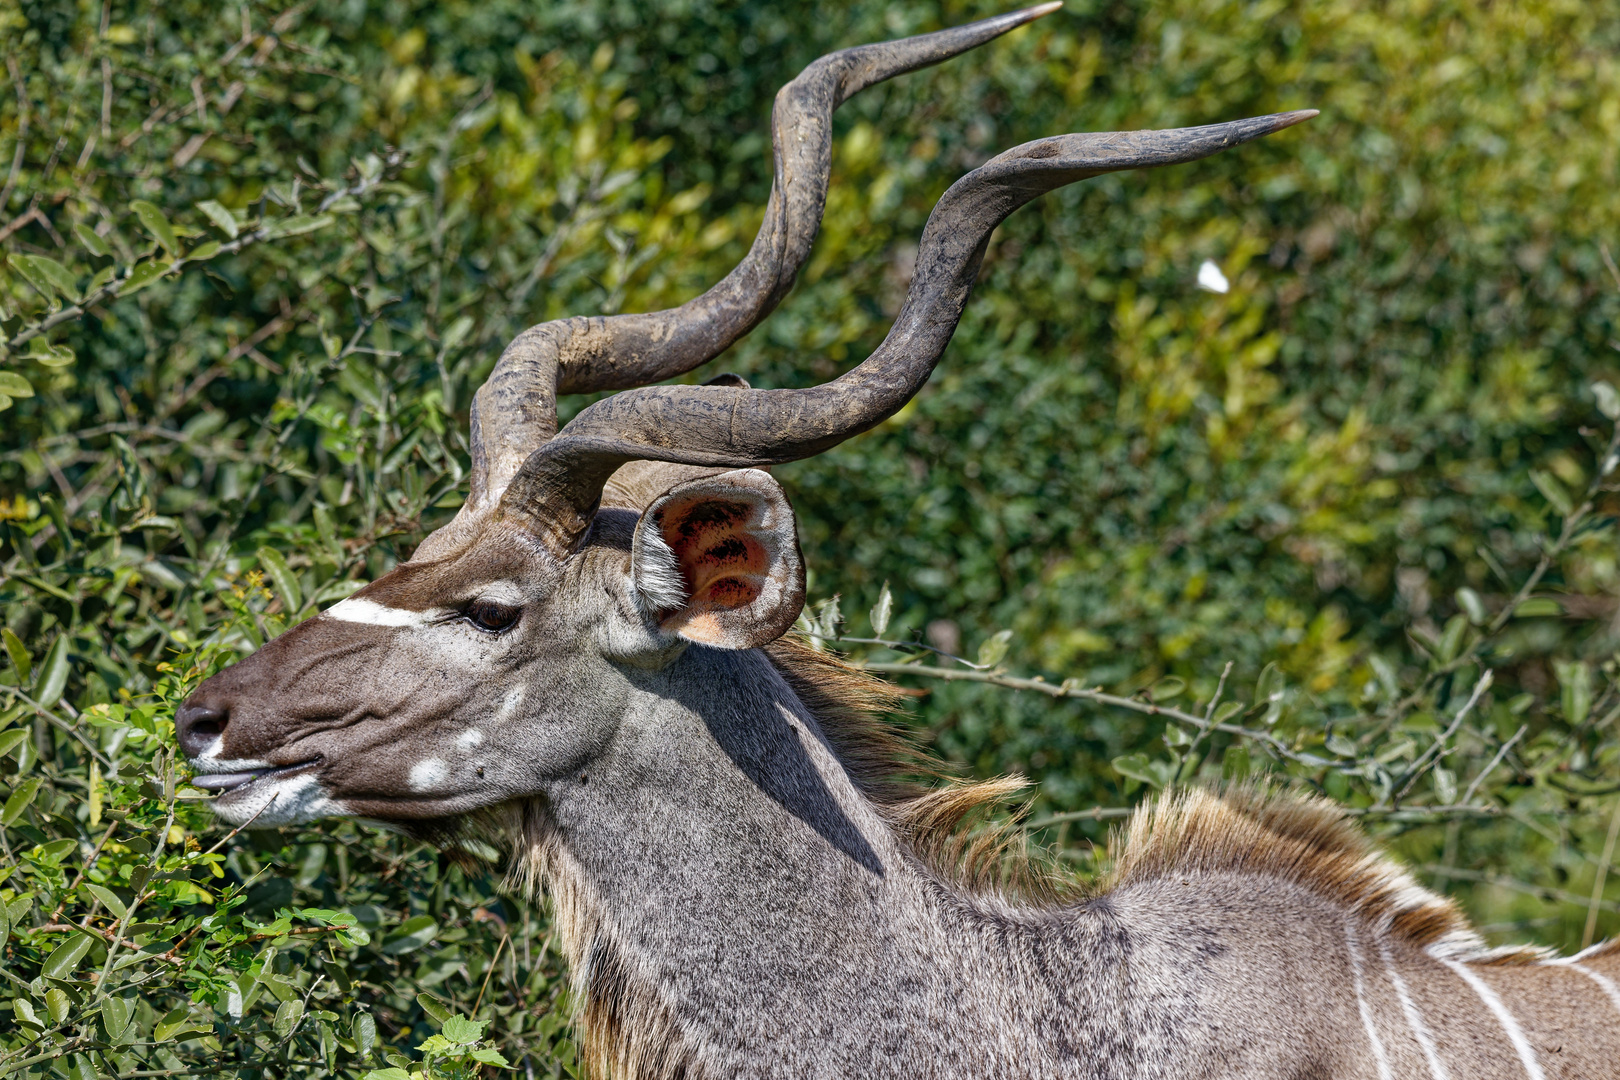 Kudu Bock